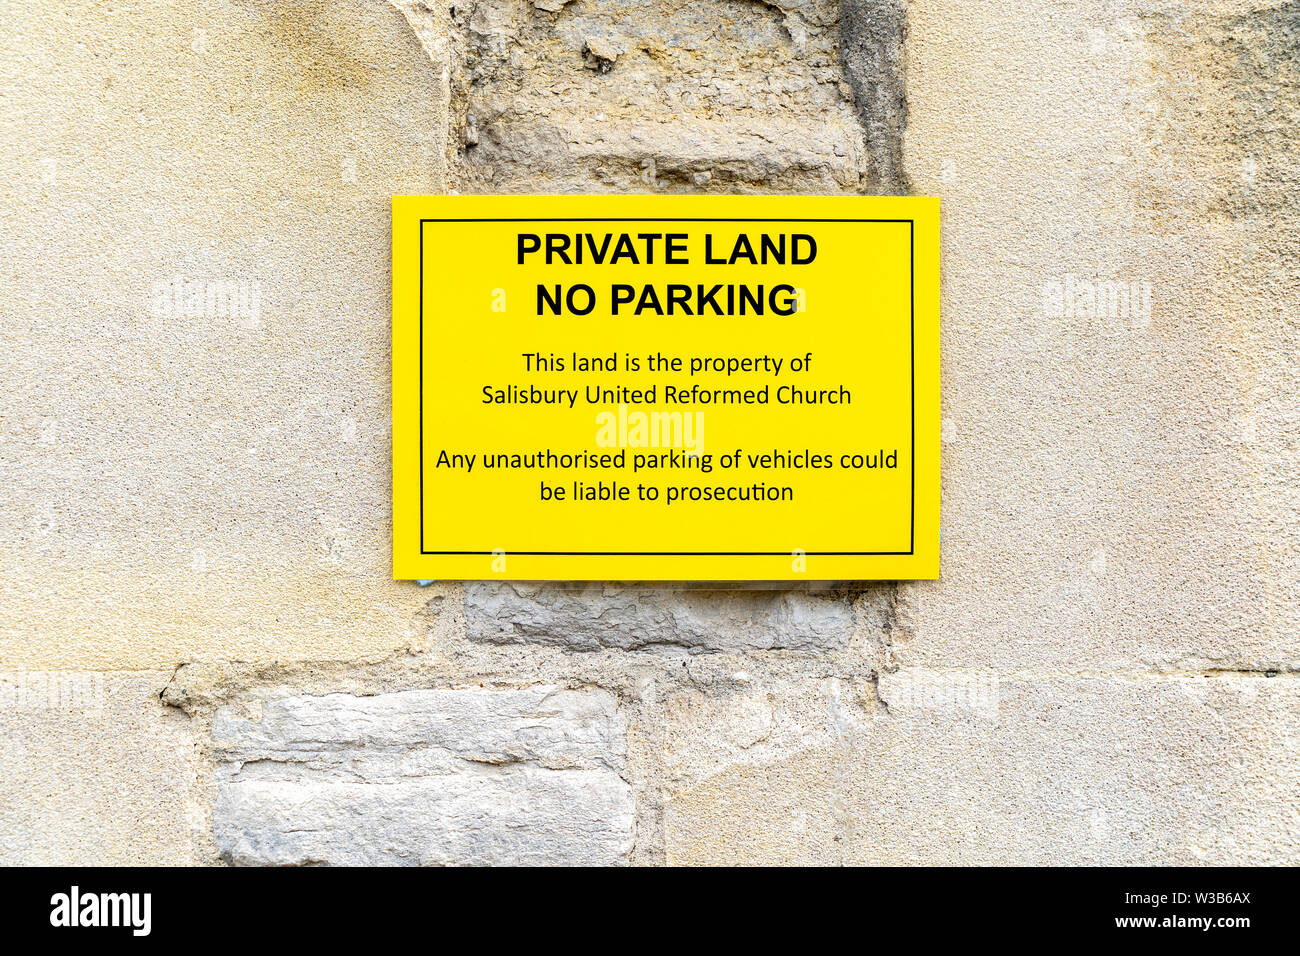 No hay aparcamiento de tierras privadas flyer fija a la pared de piedra Foto de stock